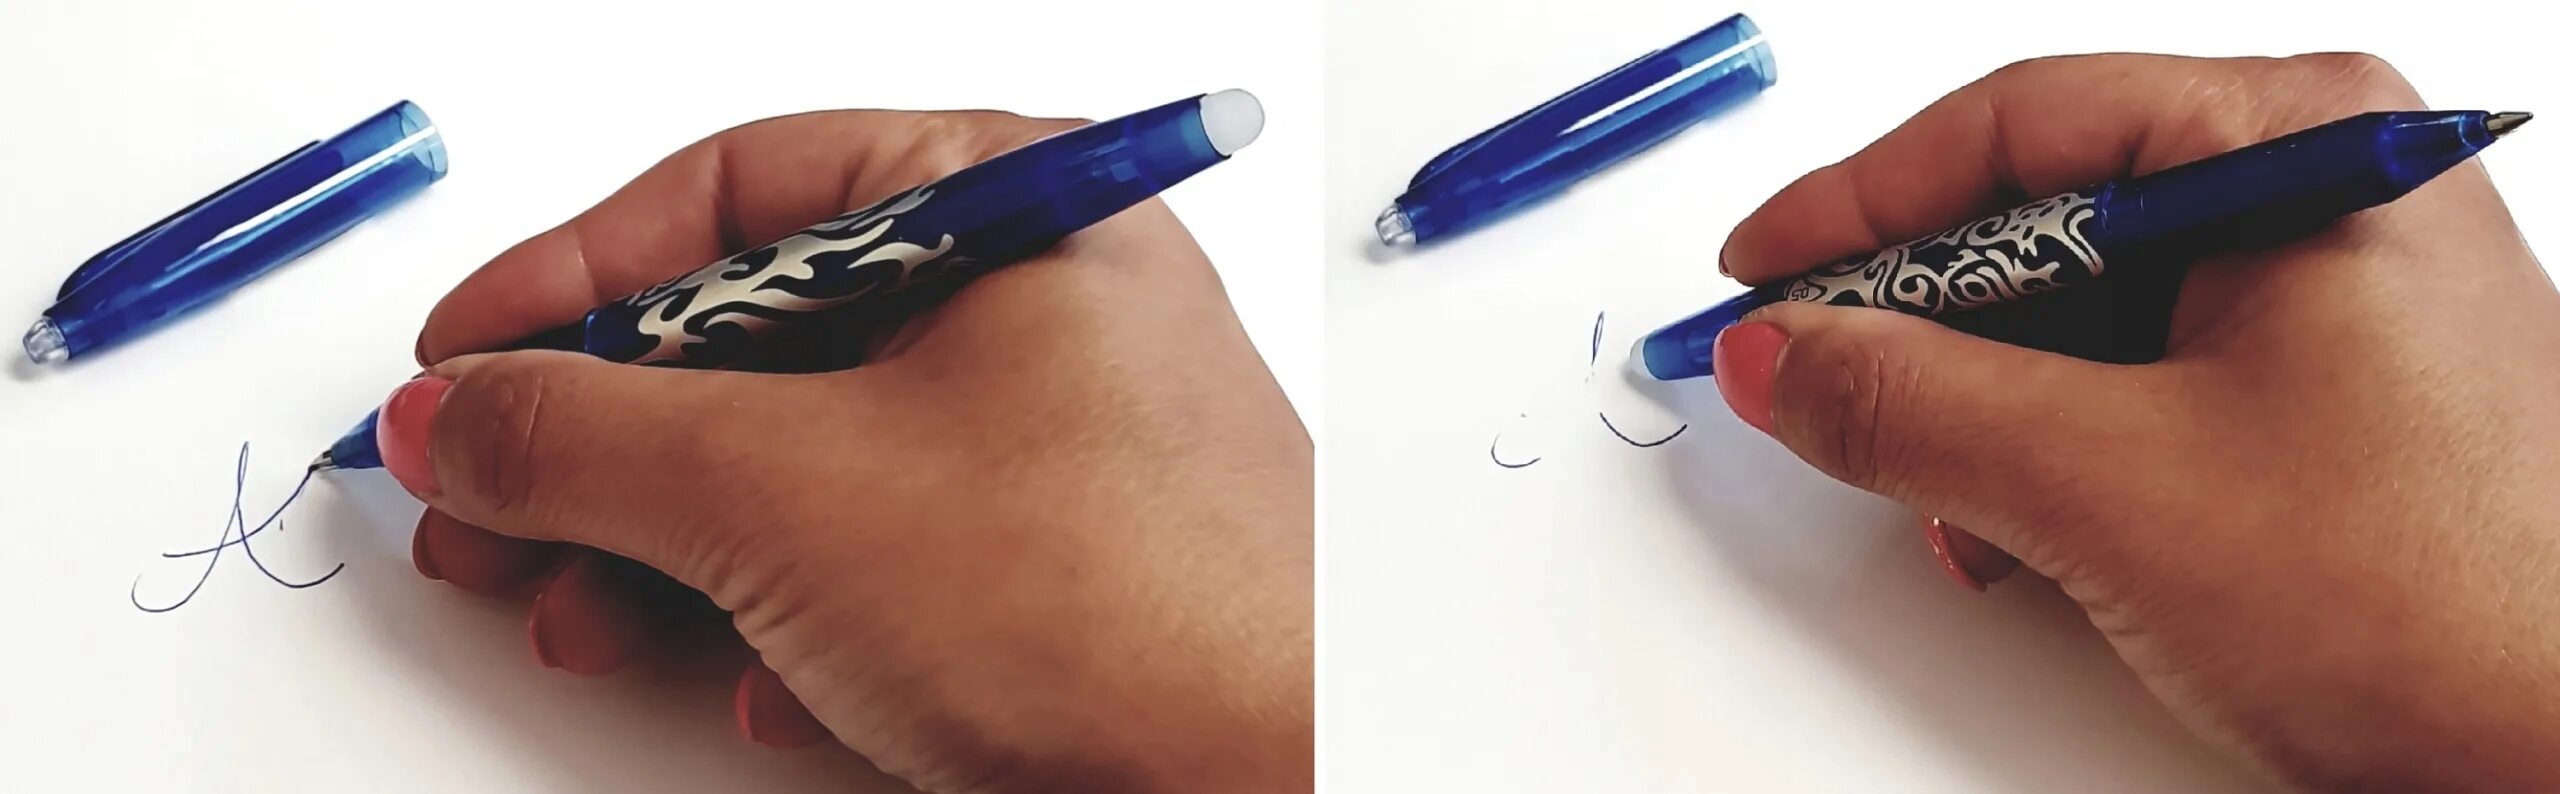 Ручка стирающаяся ластиком. Ручка с резинкой для стирания. Ручки со стирательной резинкой. Ручка с ластиком шариковая ручка.